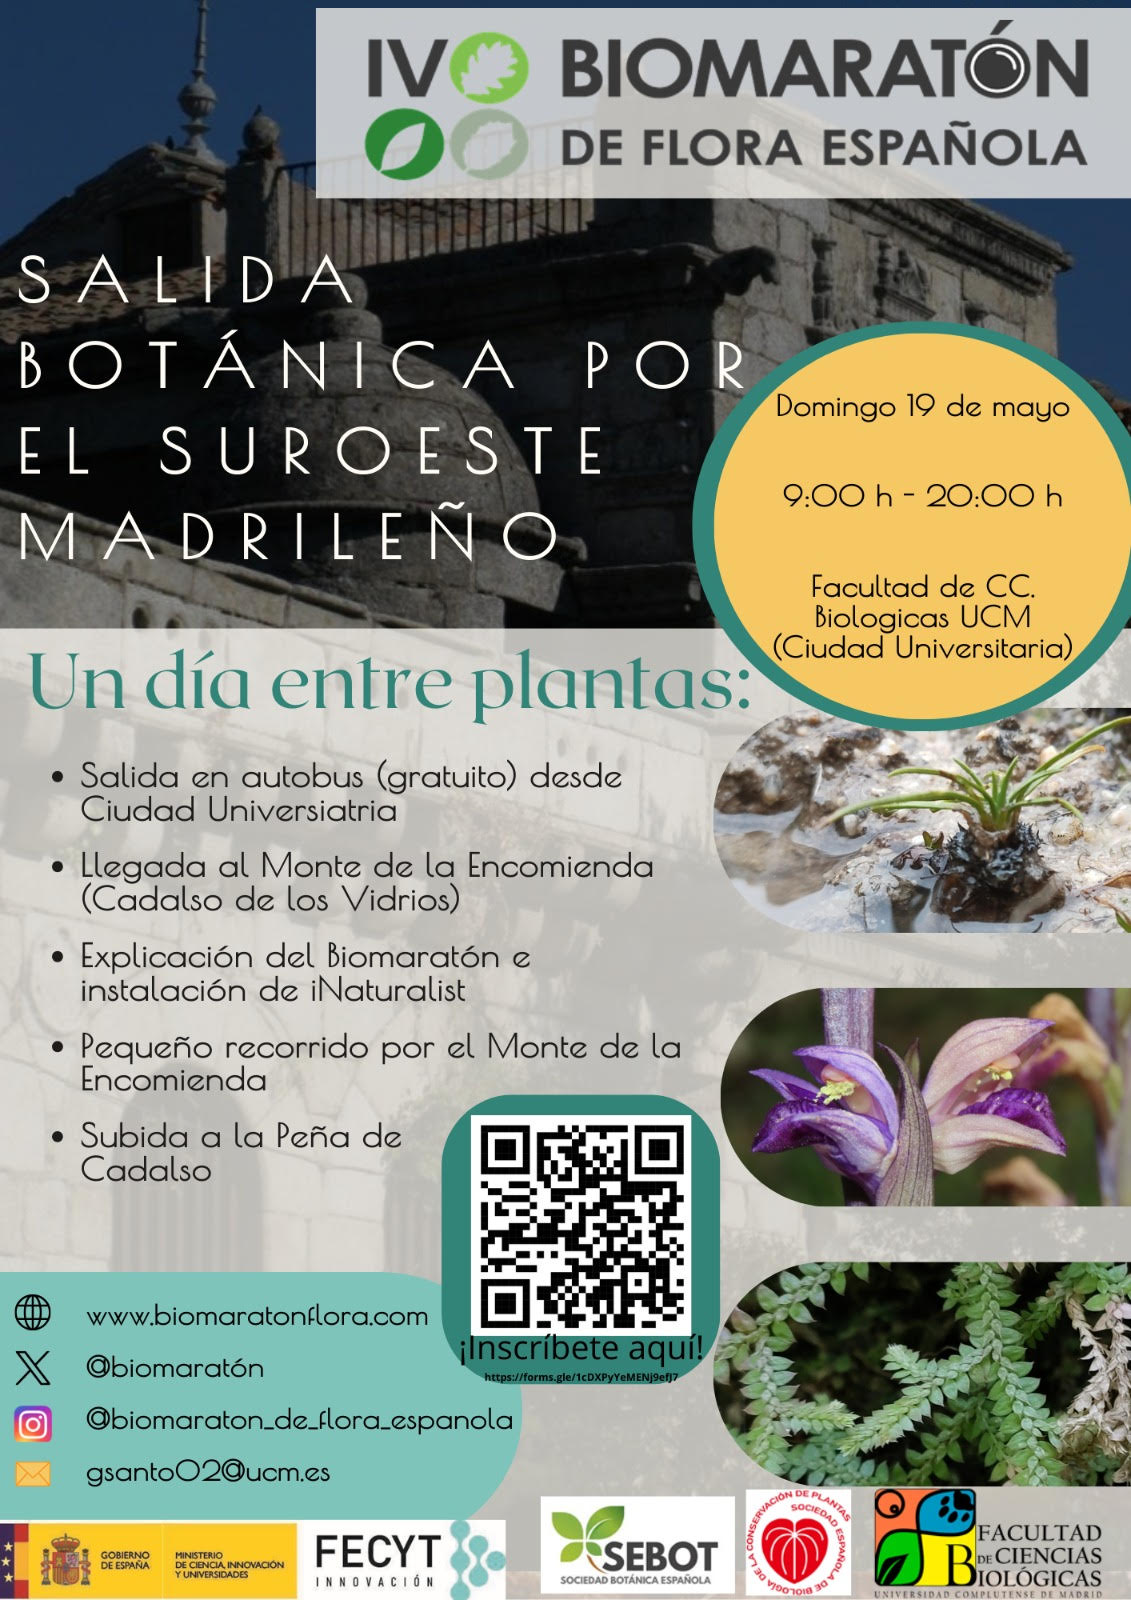 Salida botánica por el suroeste madrileño (Domingo 19 de mayo)